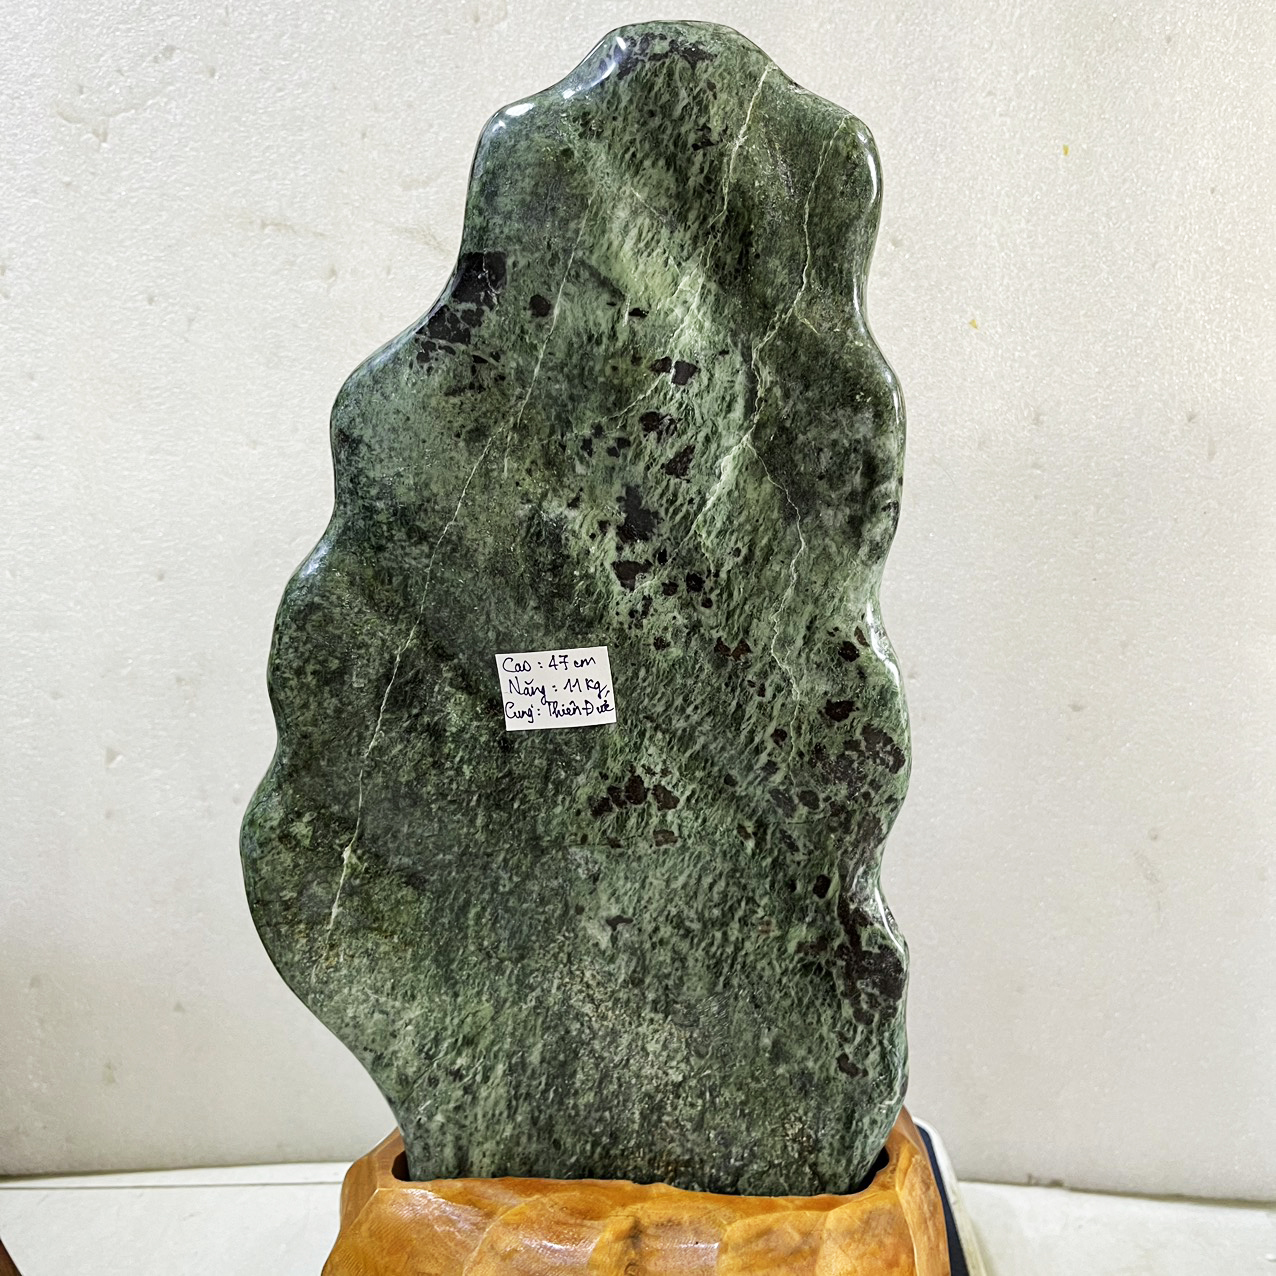 Đá, cây đá, trụ đá phong thủy serpentine cao 47 cm nặng 11 kg cho mệnh Hỏa và Mộc